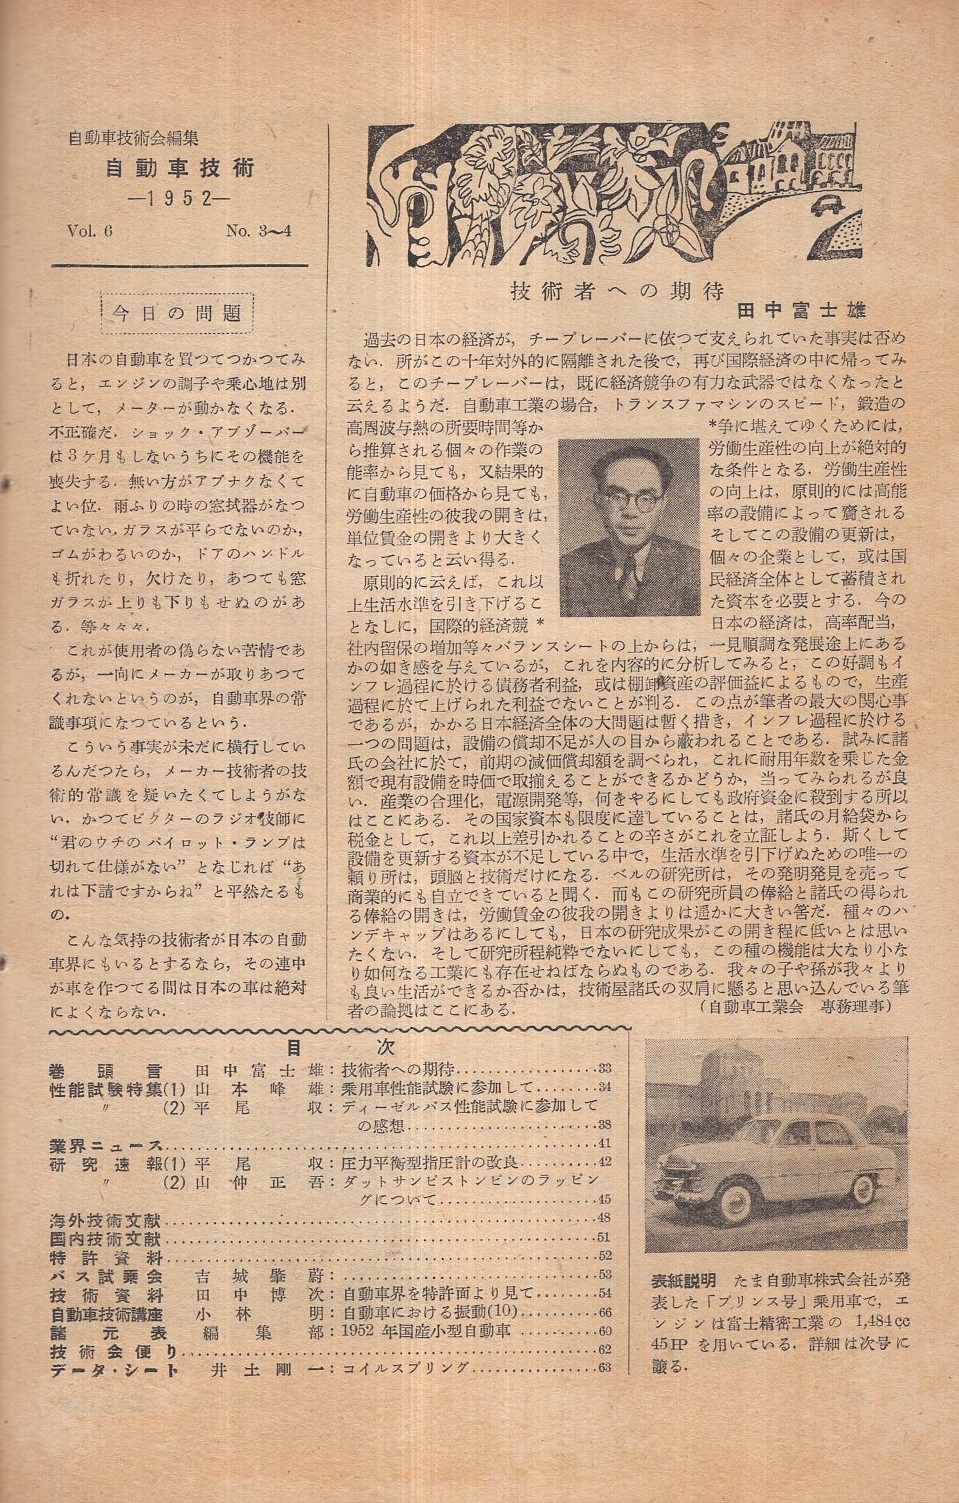 自動車技術 昭和月合併号 表紙写真 たま自動車株式会社